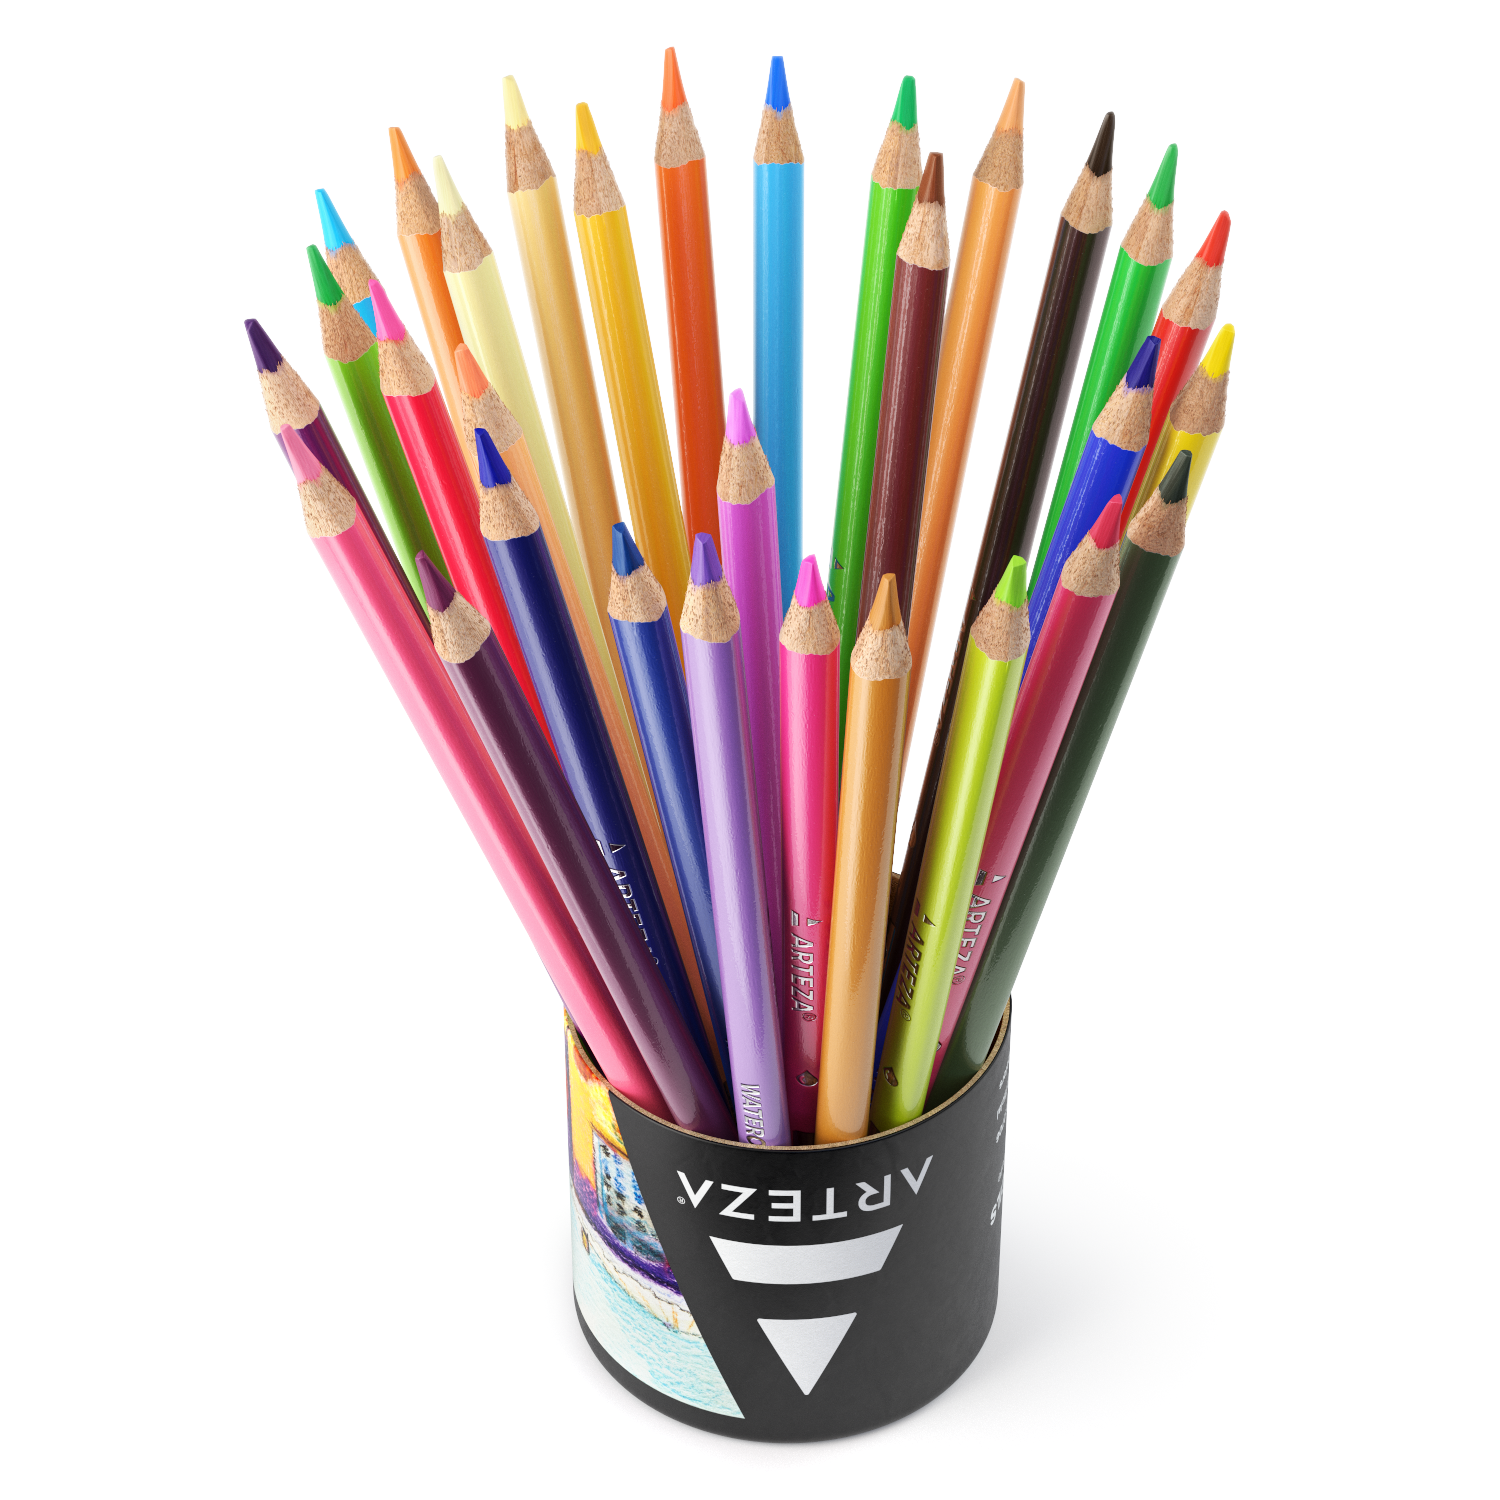 Arteza Watercolor Pencils, 72 Assorted Colors, Triangular Shape